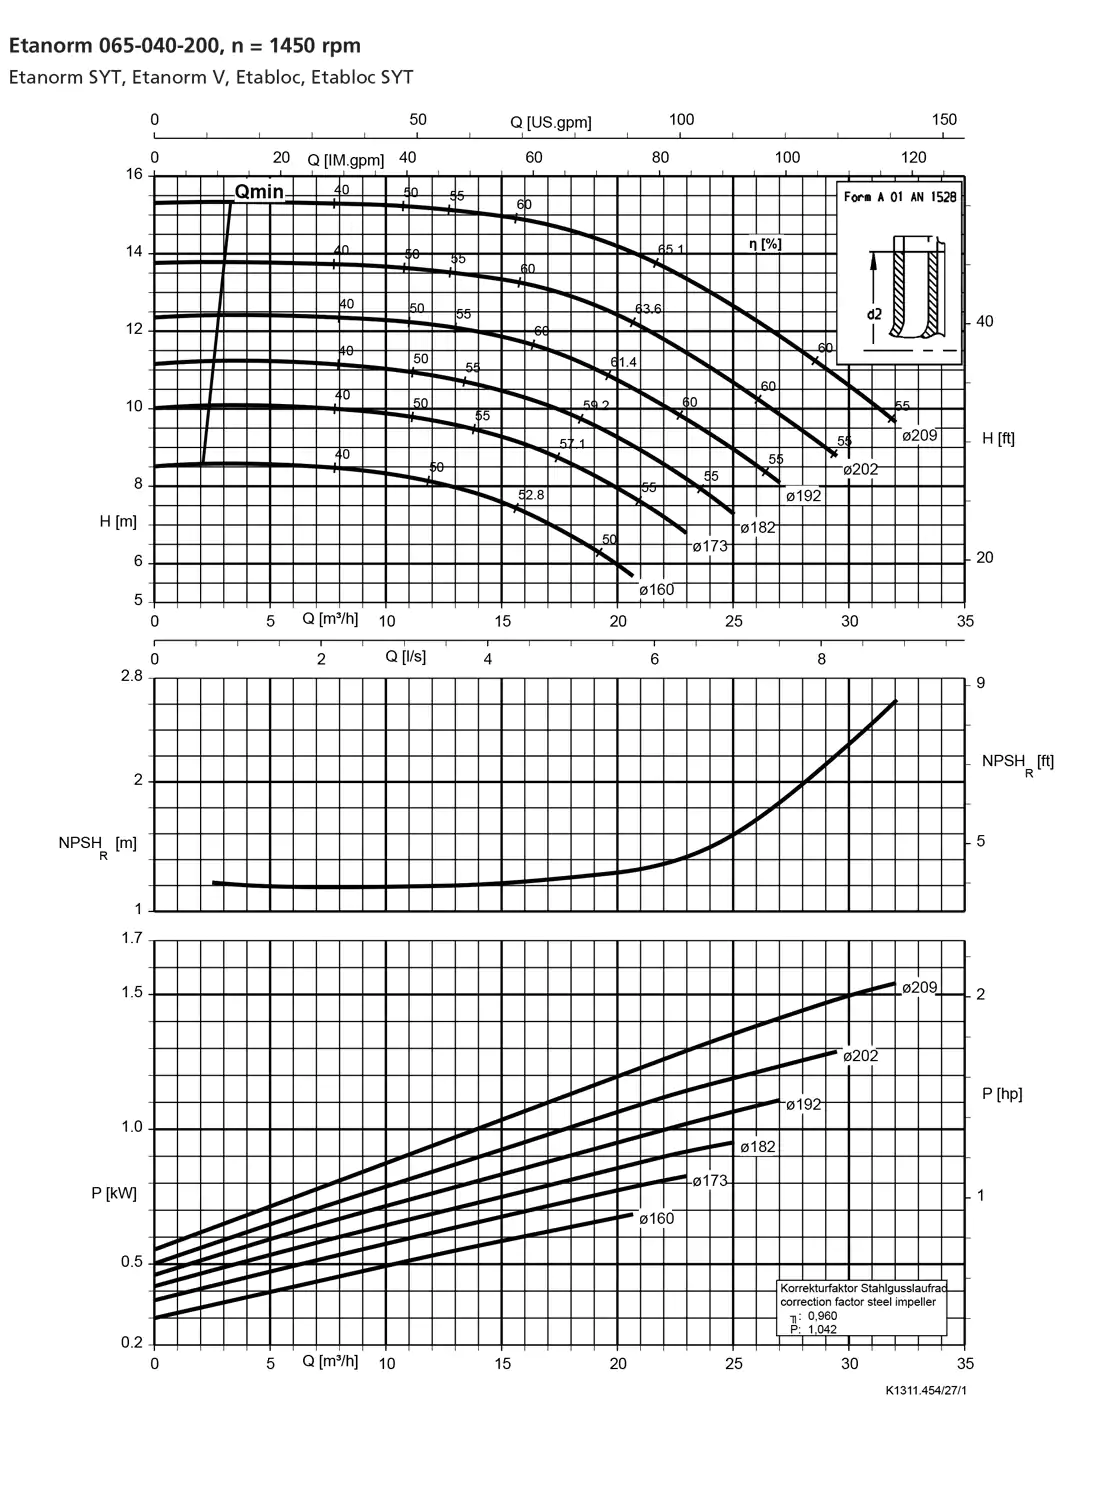 نمودار-کارکرد-پمپ-etanorm-syt-65-040-200-1450